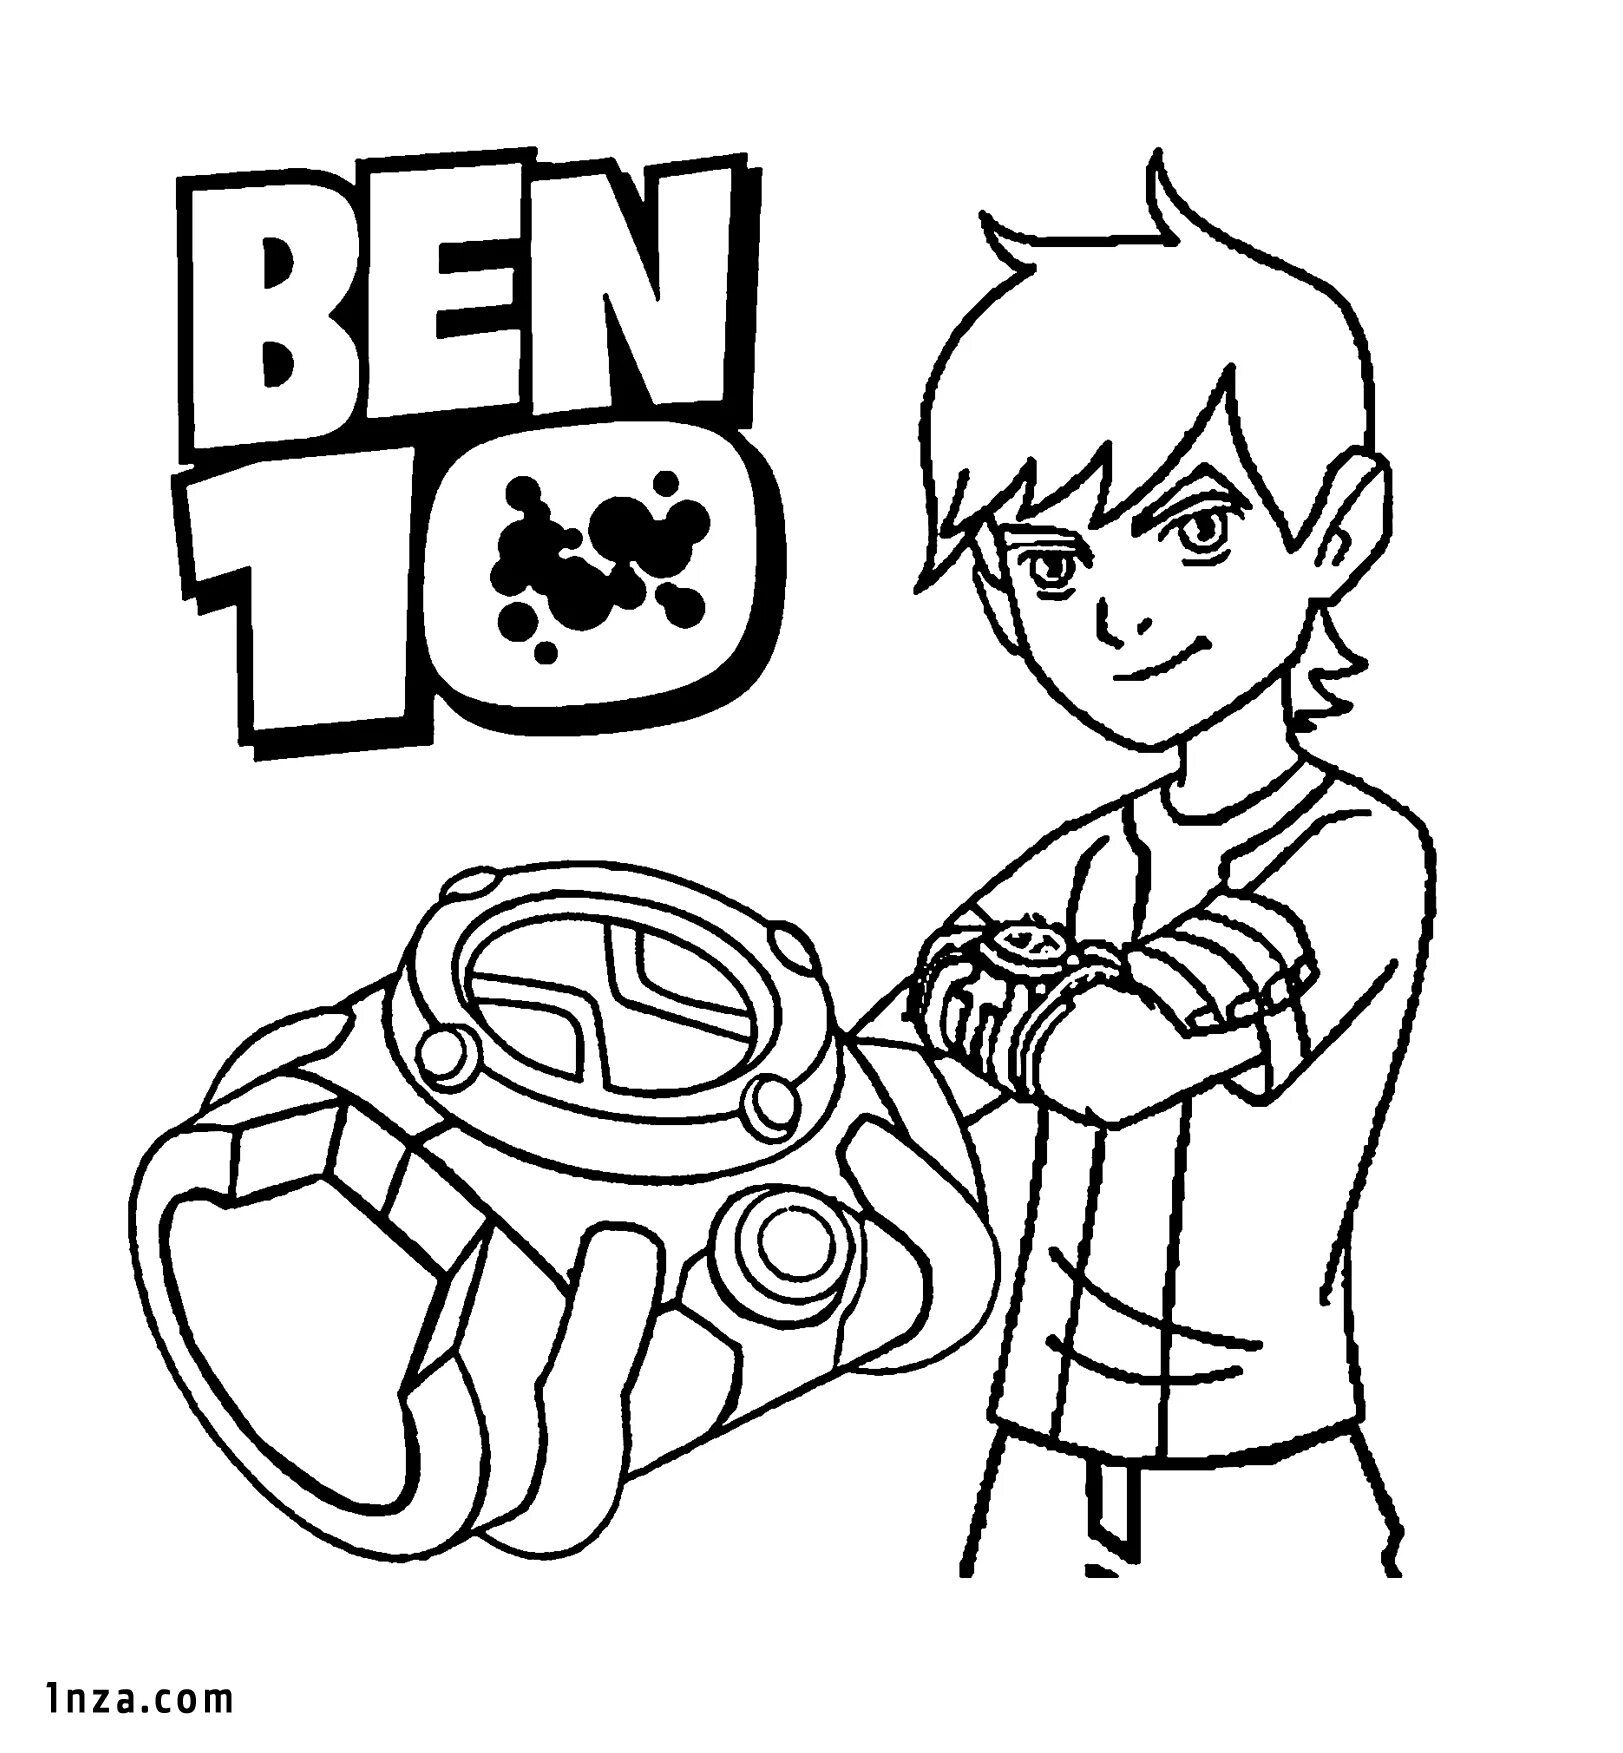 Раскраски Бен 10 - Распечатать Бен Тена и пришельцев - картинок